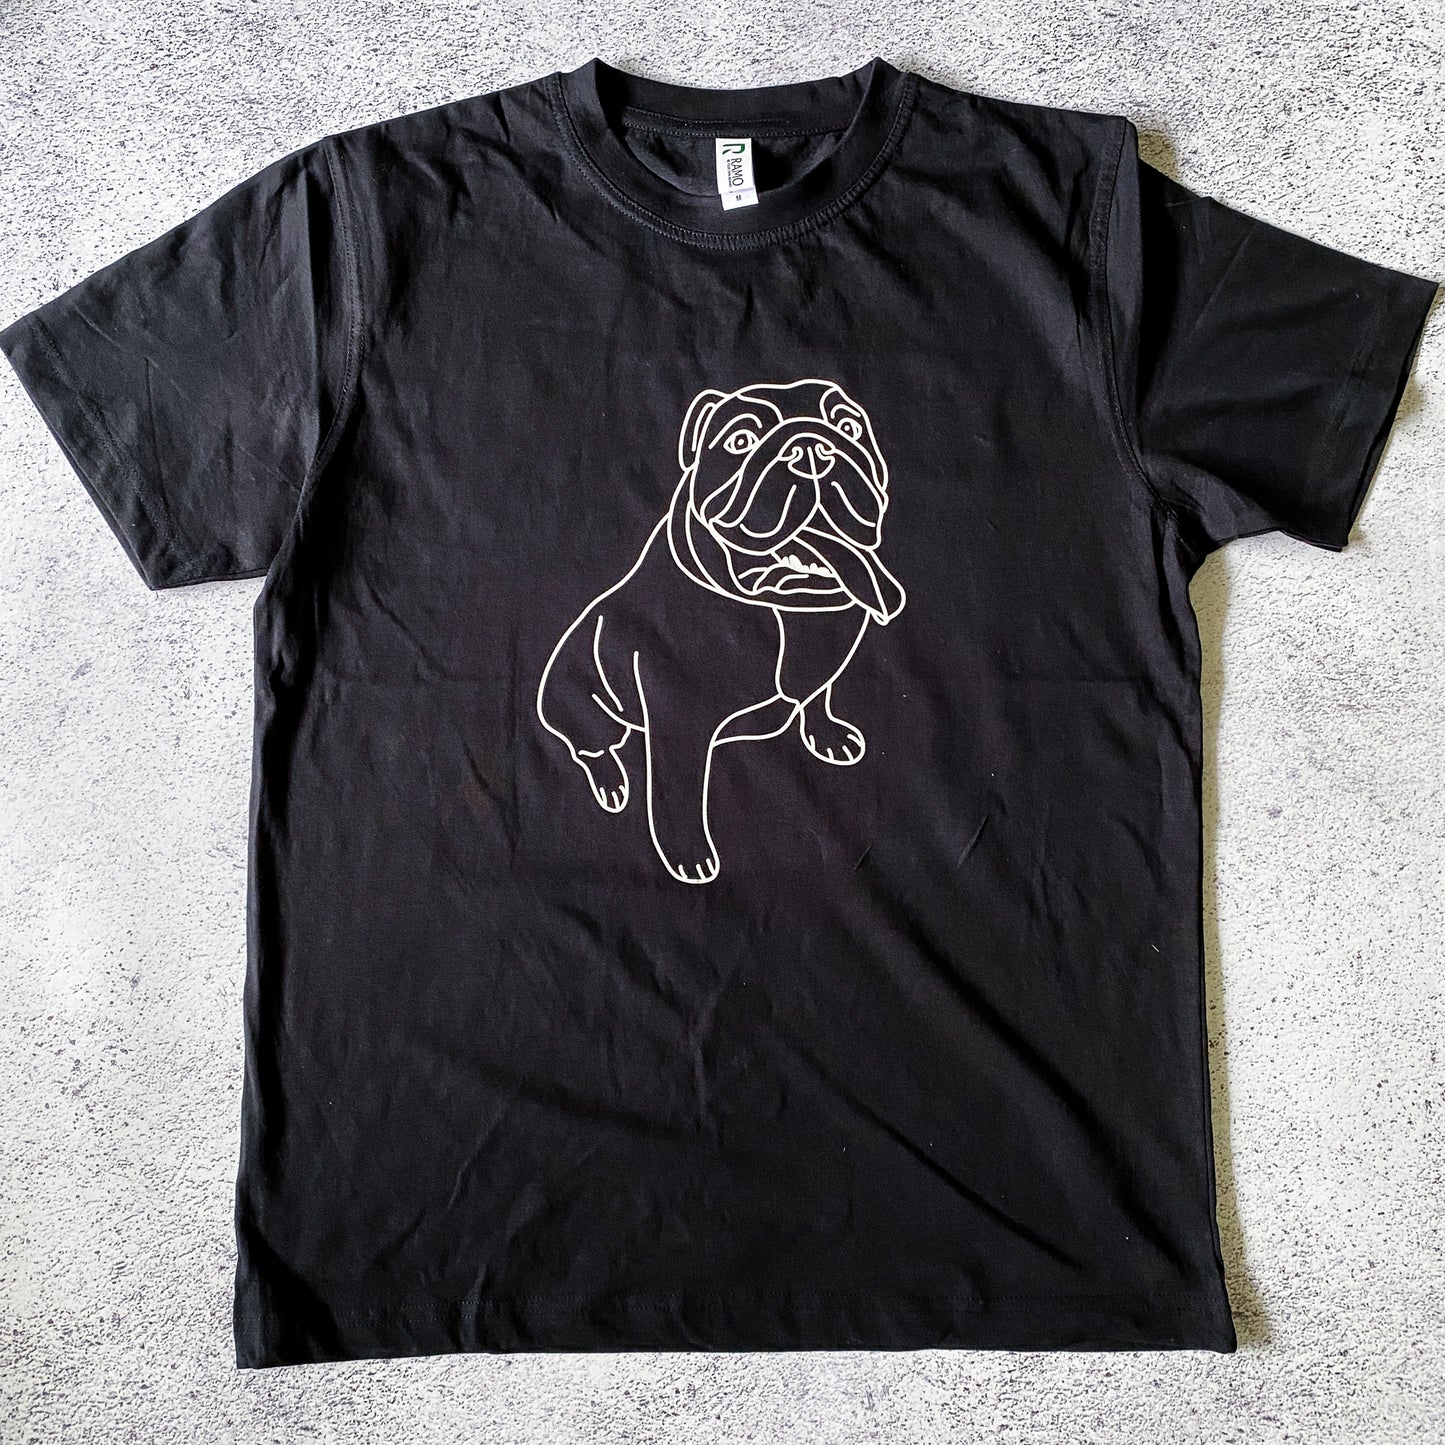 Custom Pet Portrait Unisex T-Shirt - One Pet